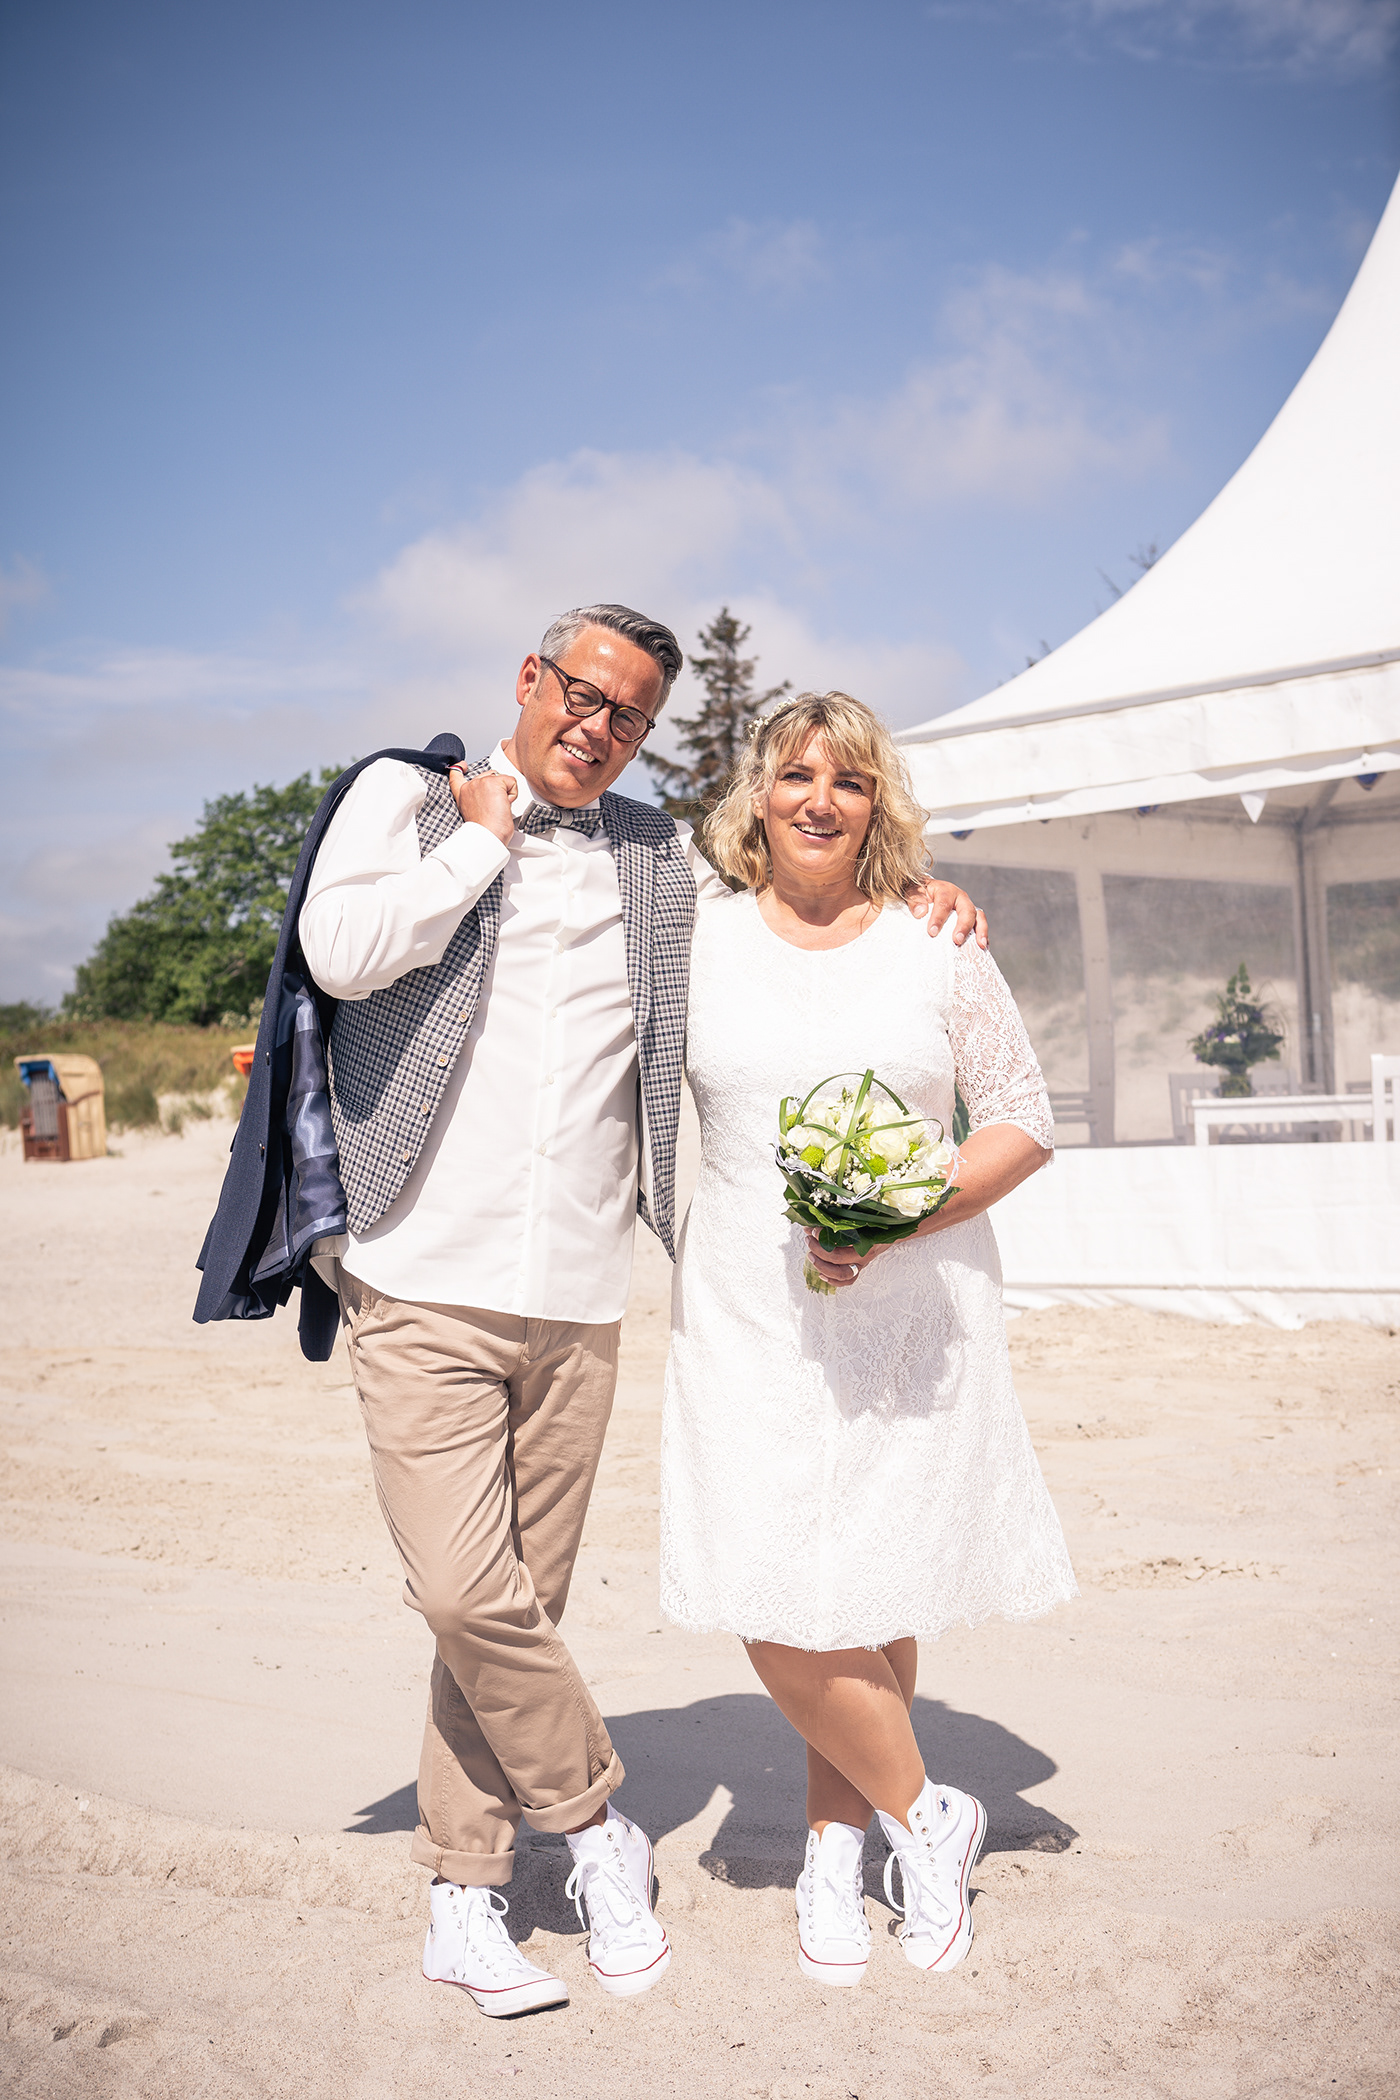 Braut Brautkleid fotografie Hochzeit Hochzeitsfotografie lieben  ringe Standesamt strandhochzeit wedding